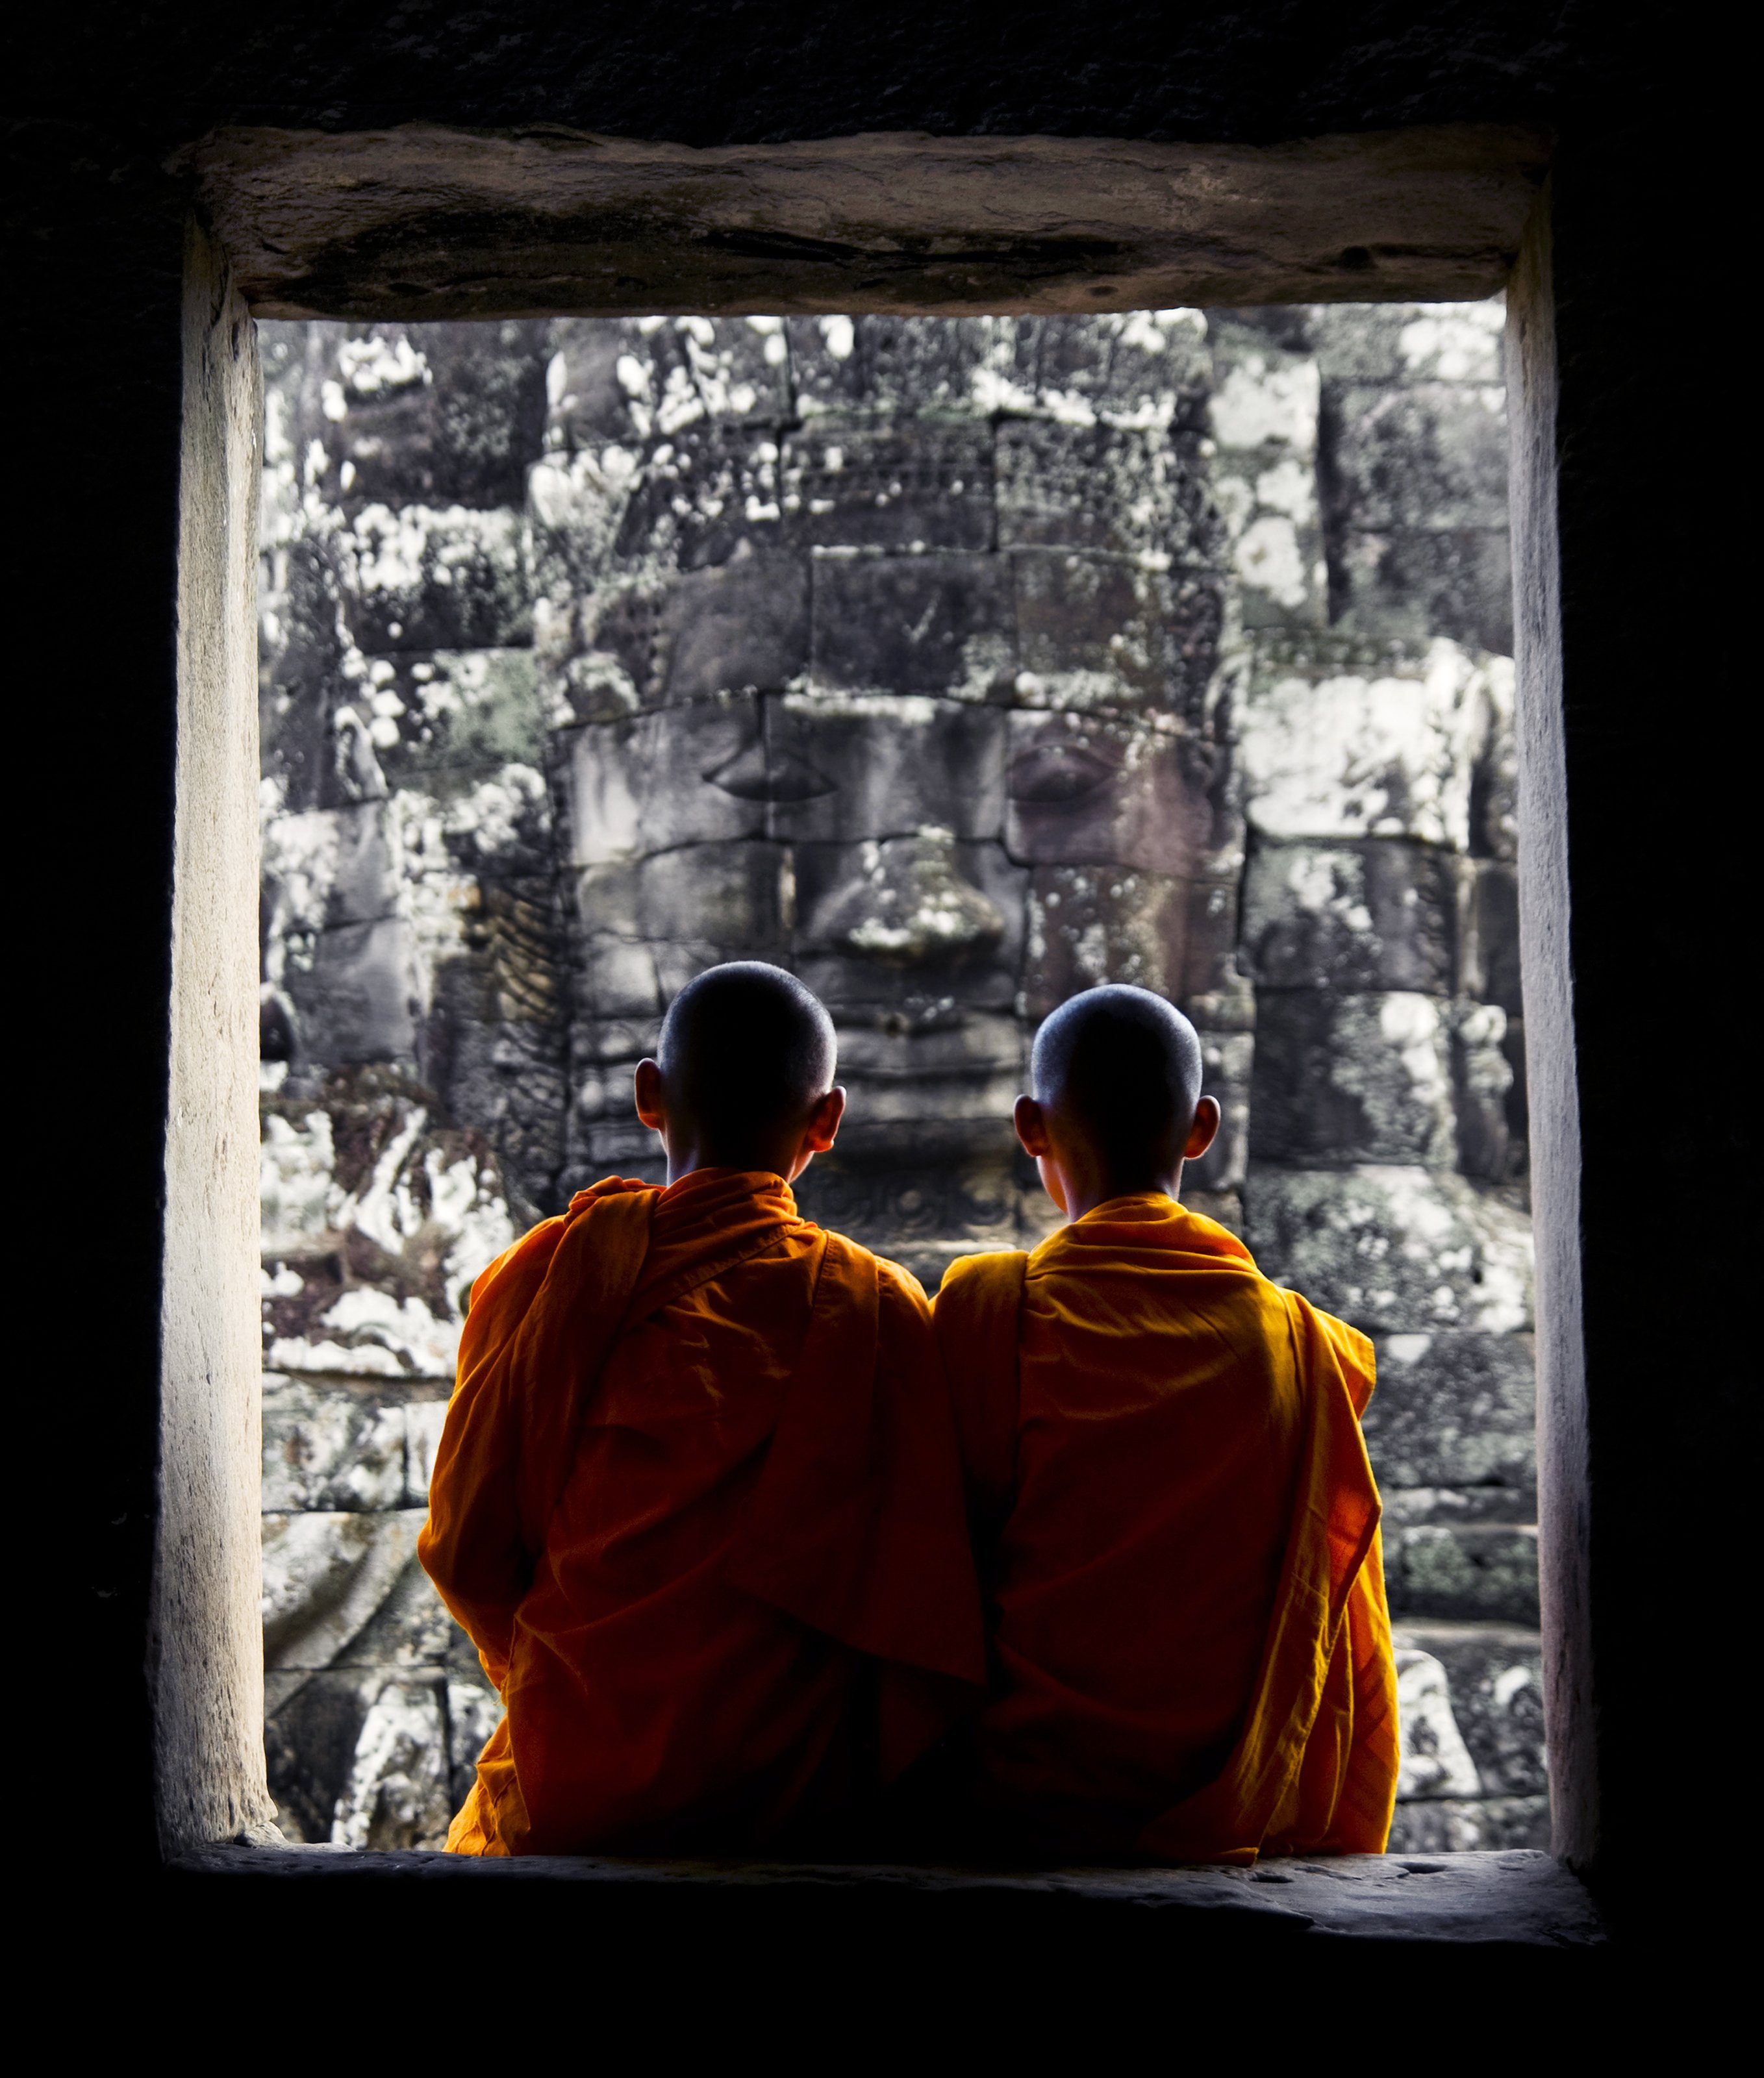 contemplating-monk-in-cambodia-2022-12-16-00-03-52-utc